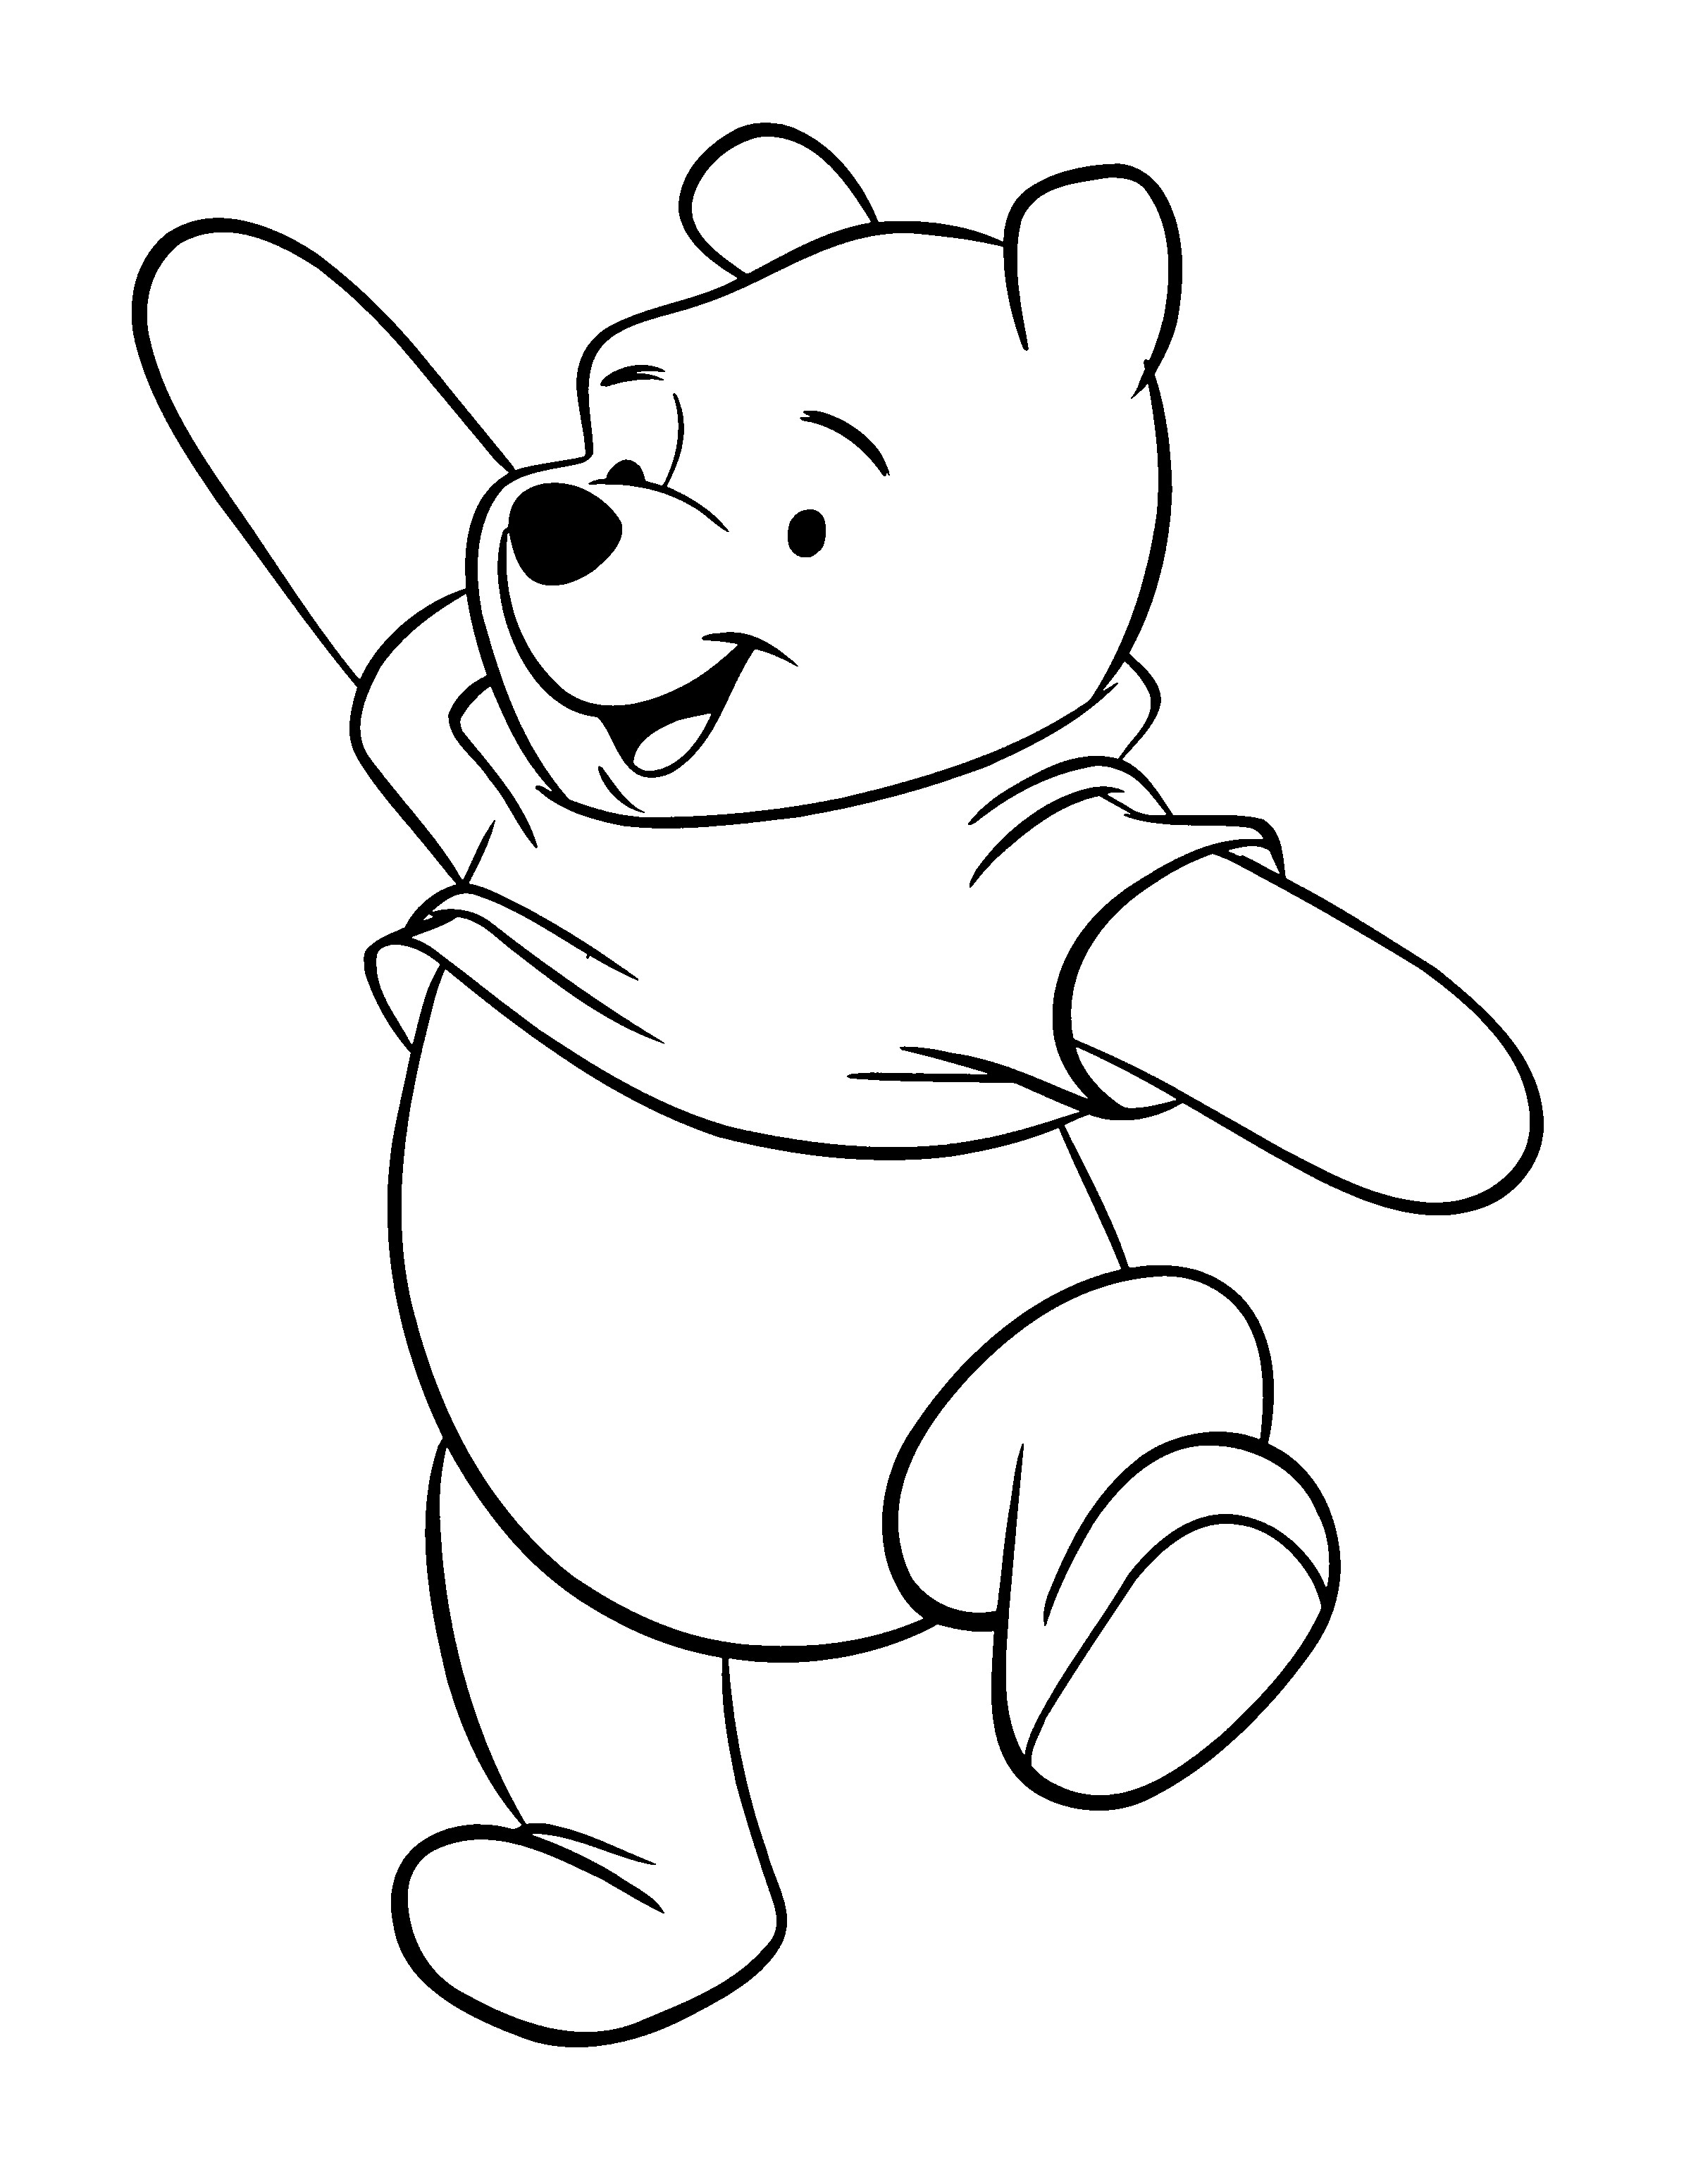 Ausmalbilder Winnie Pooh
 Winnie Puuh Ausmalbilder & Malvorlagen Animierte Bilder